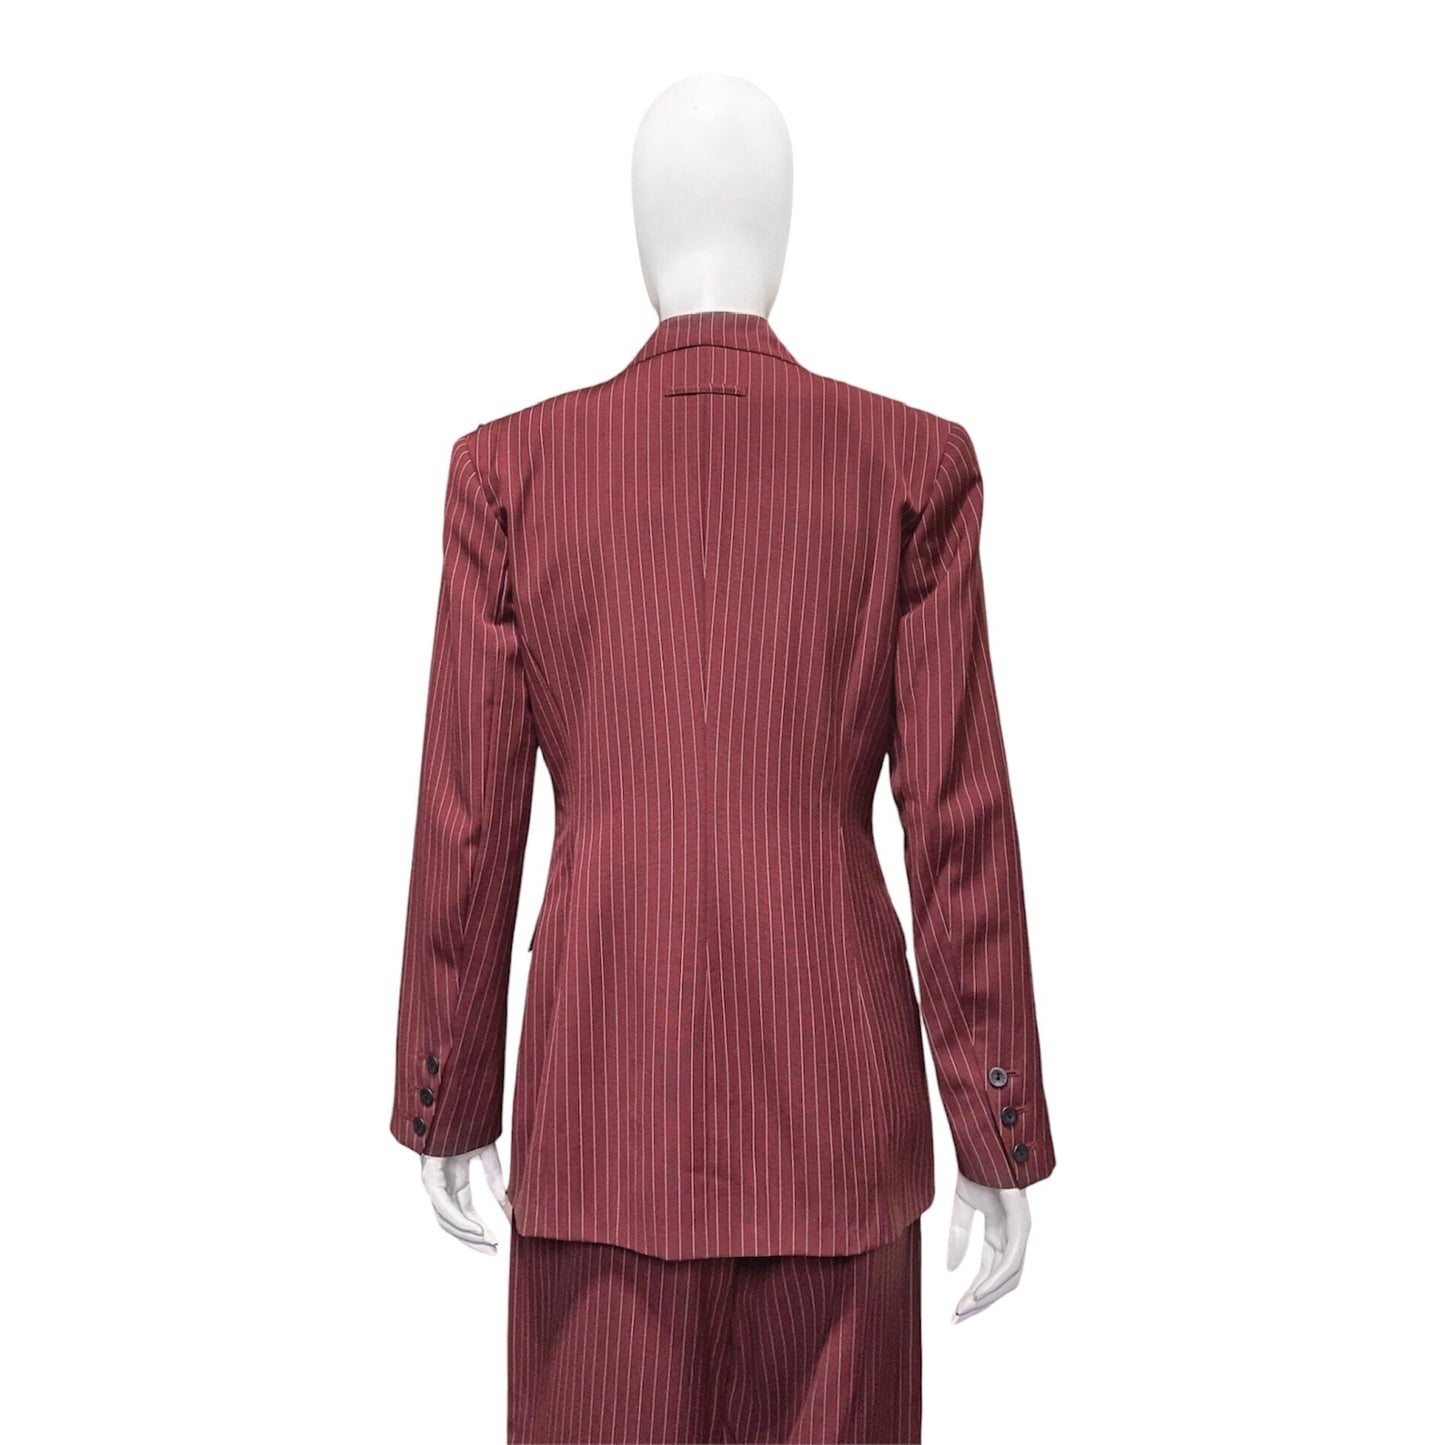 Jean Paul Gaultier Classique 90s Nine pocket Pinstripe Blazer Vest Pants Three Piece Suit 42